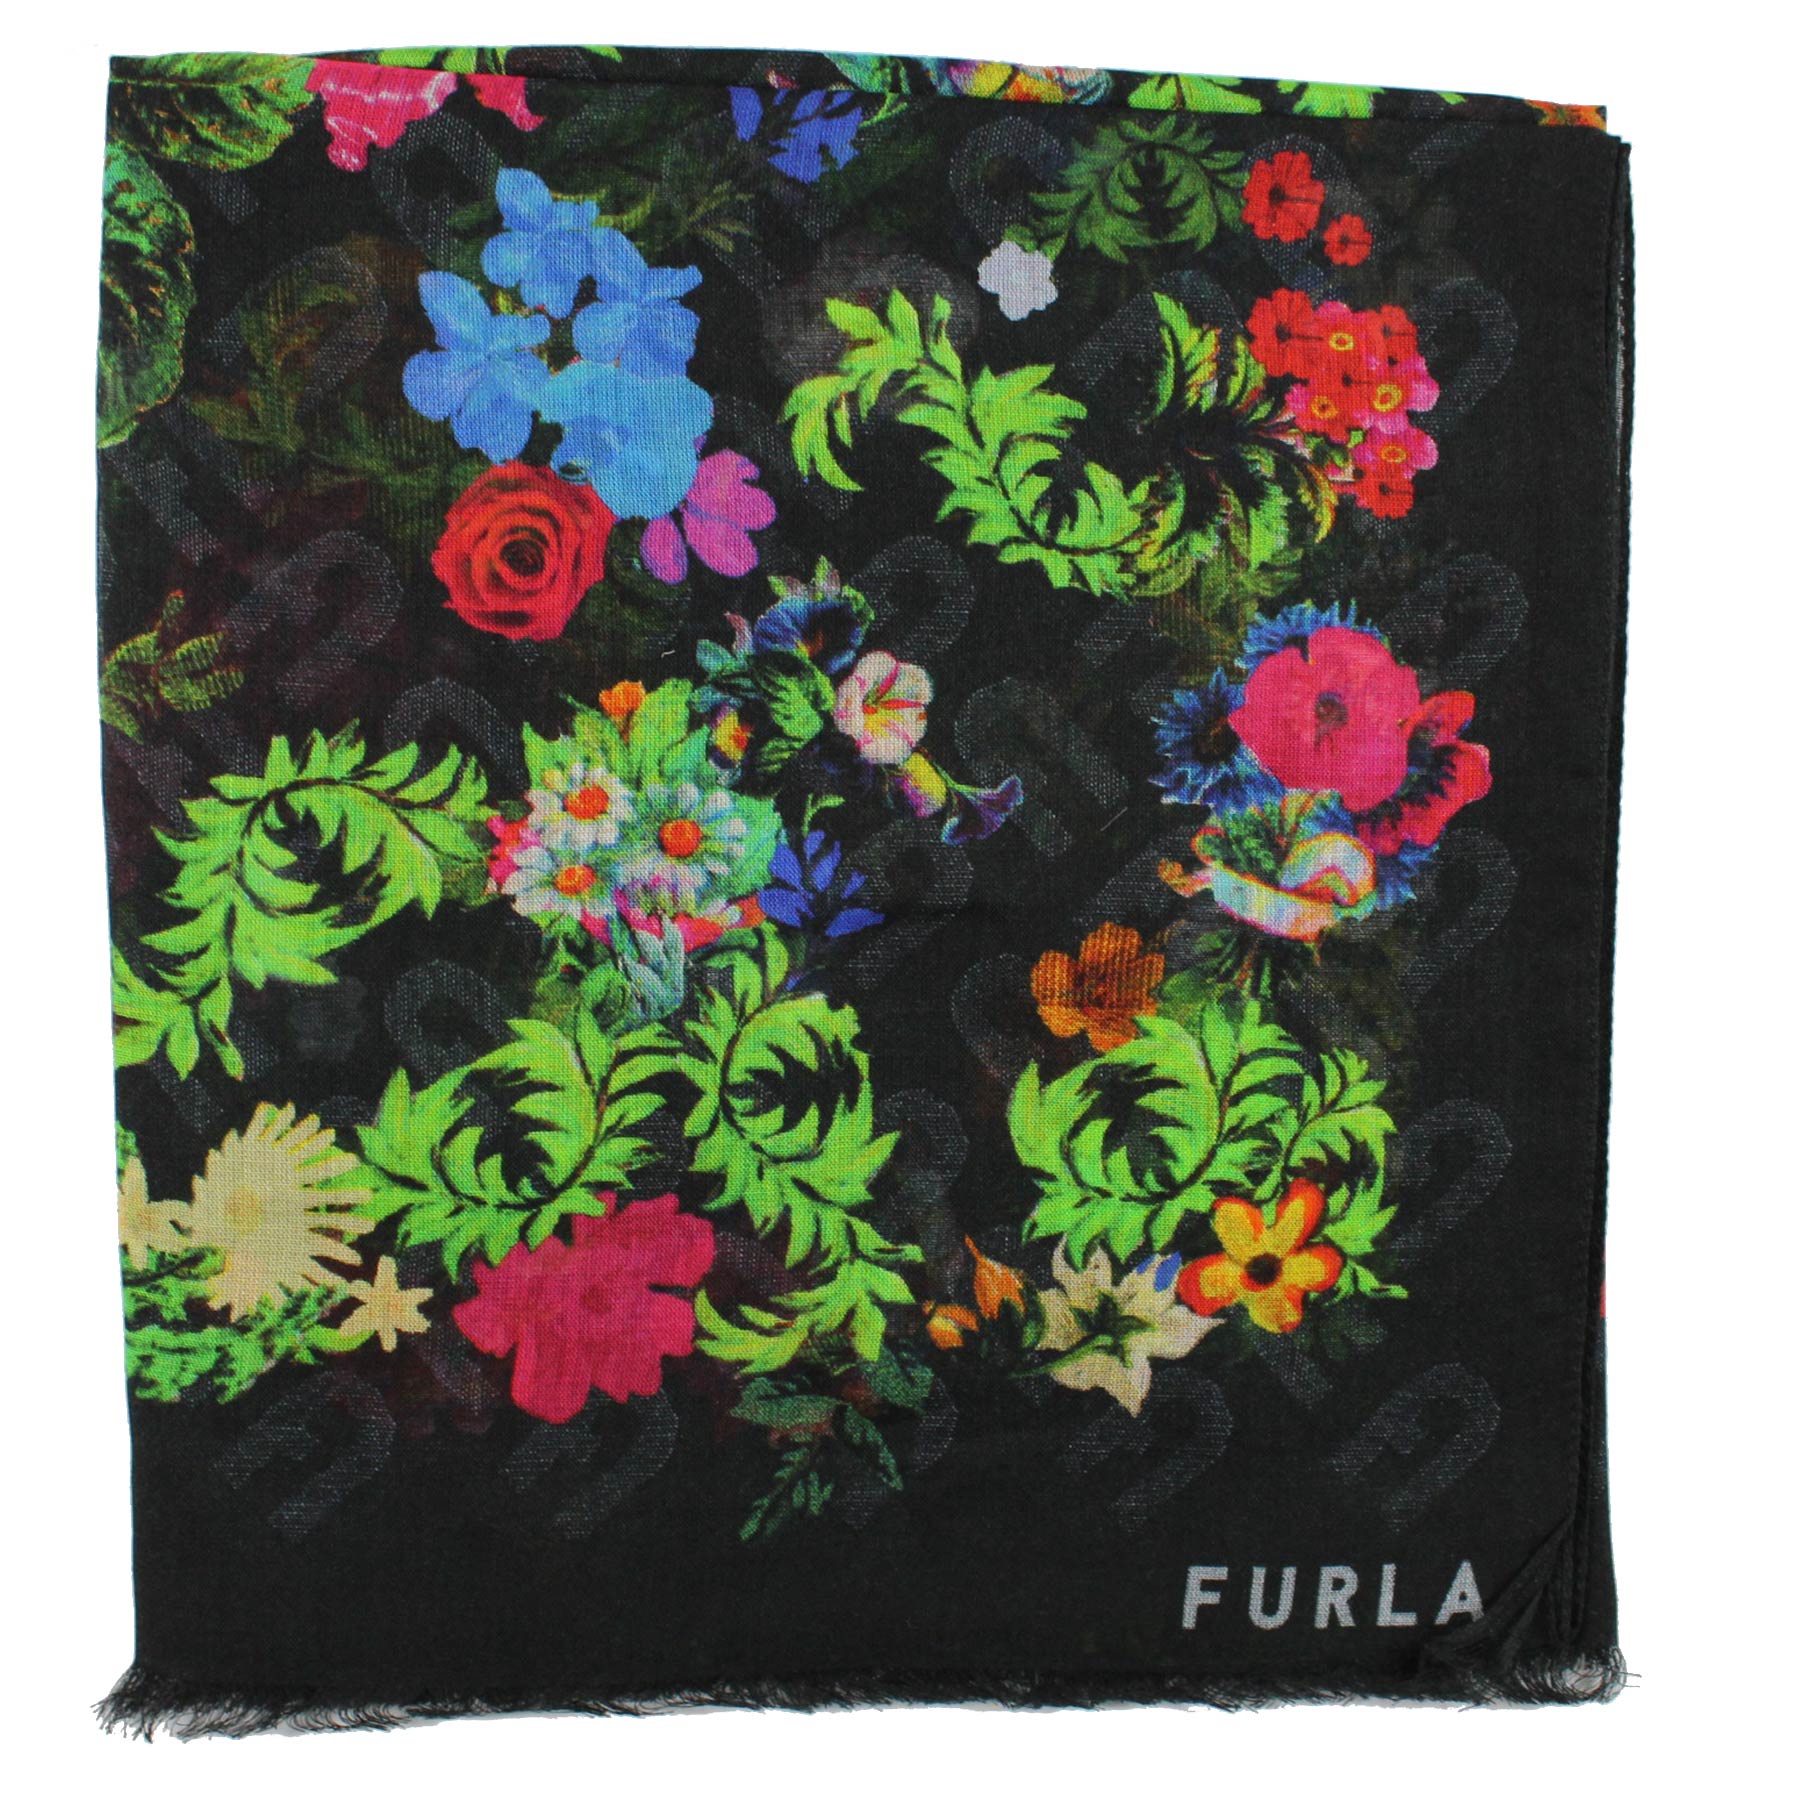 Furla Scarf Black Floral Design - Modal Silk Shawl